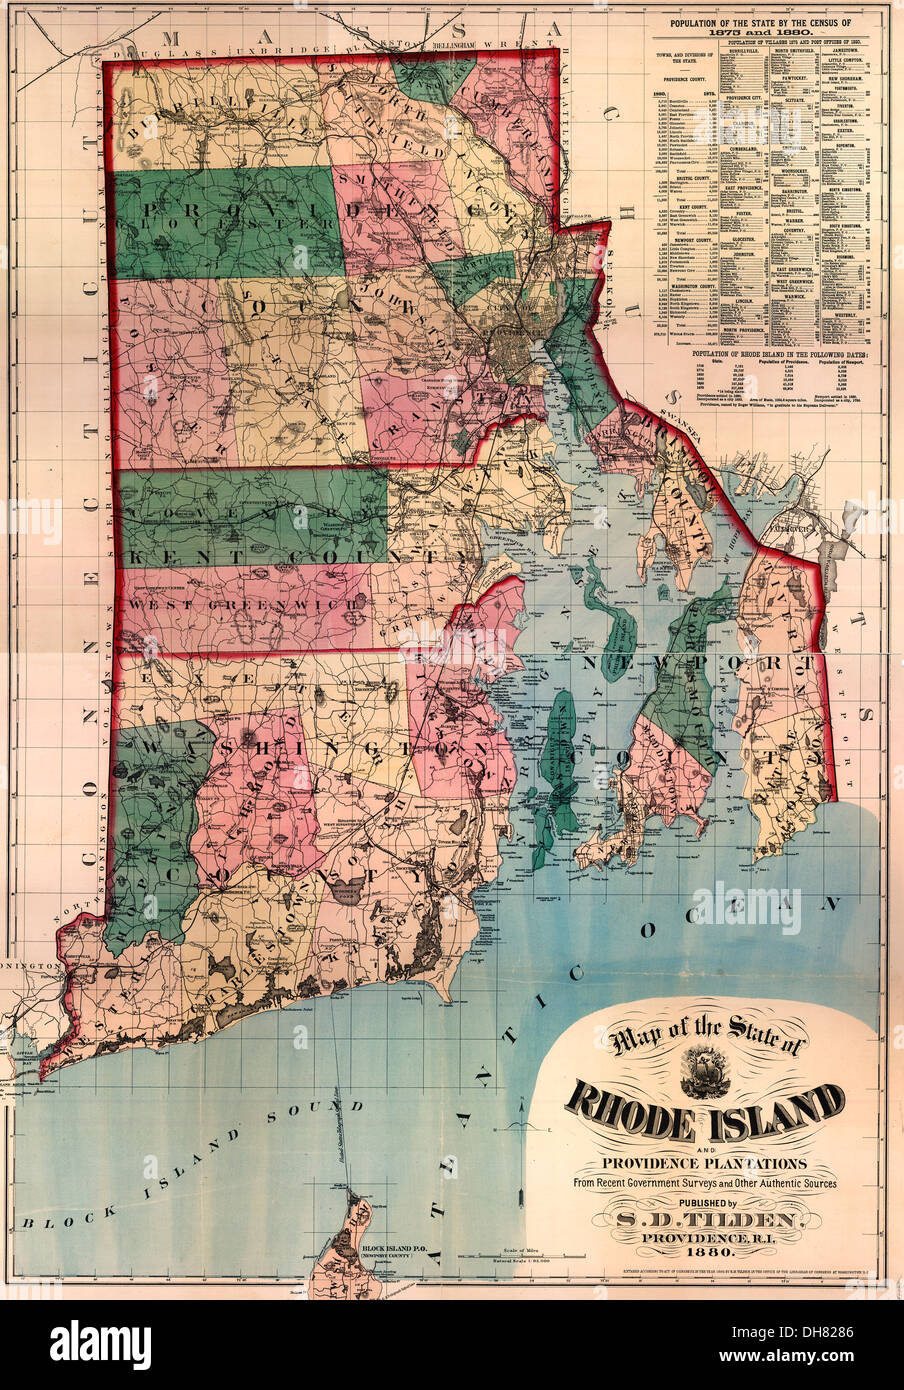 Mappa di Rhode Island e le piantagioni di Providence 1880 Foto Stock